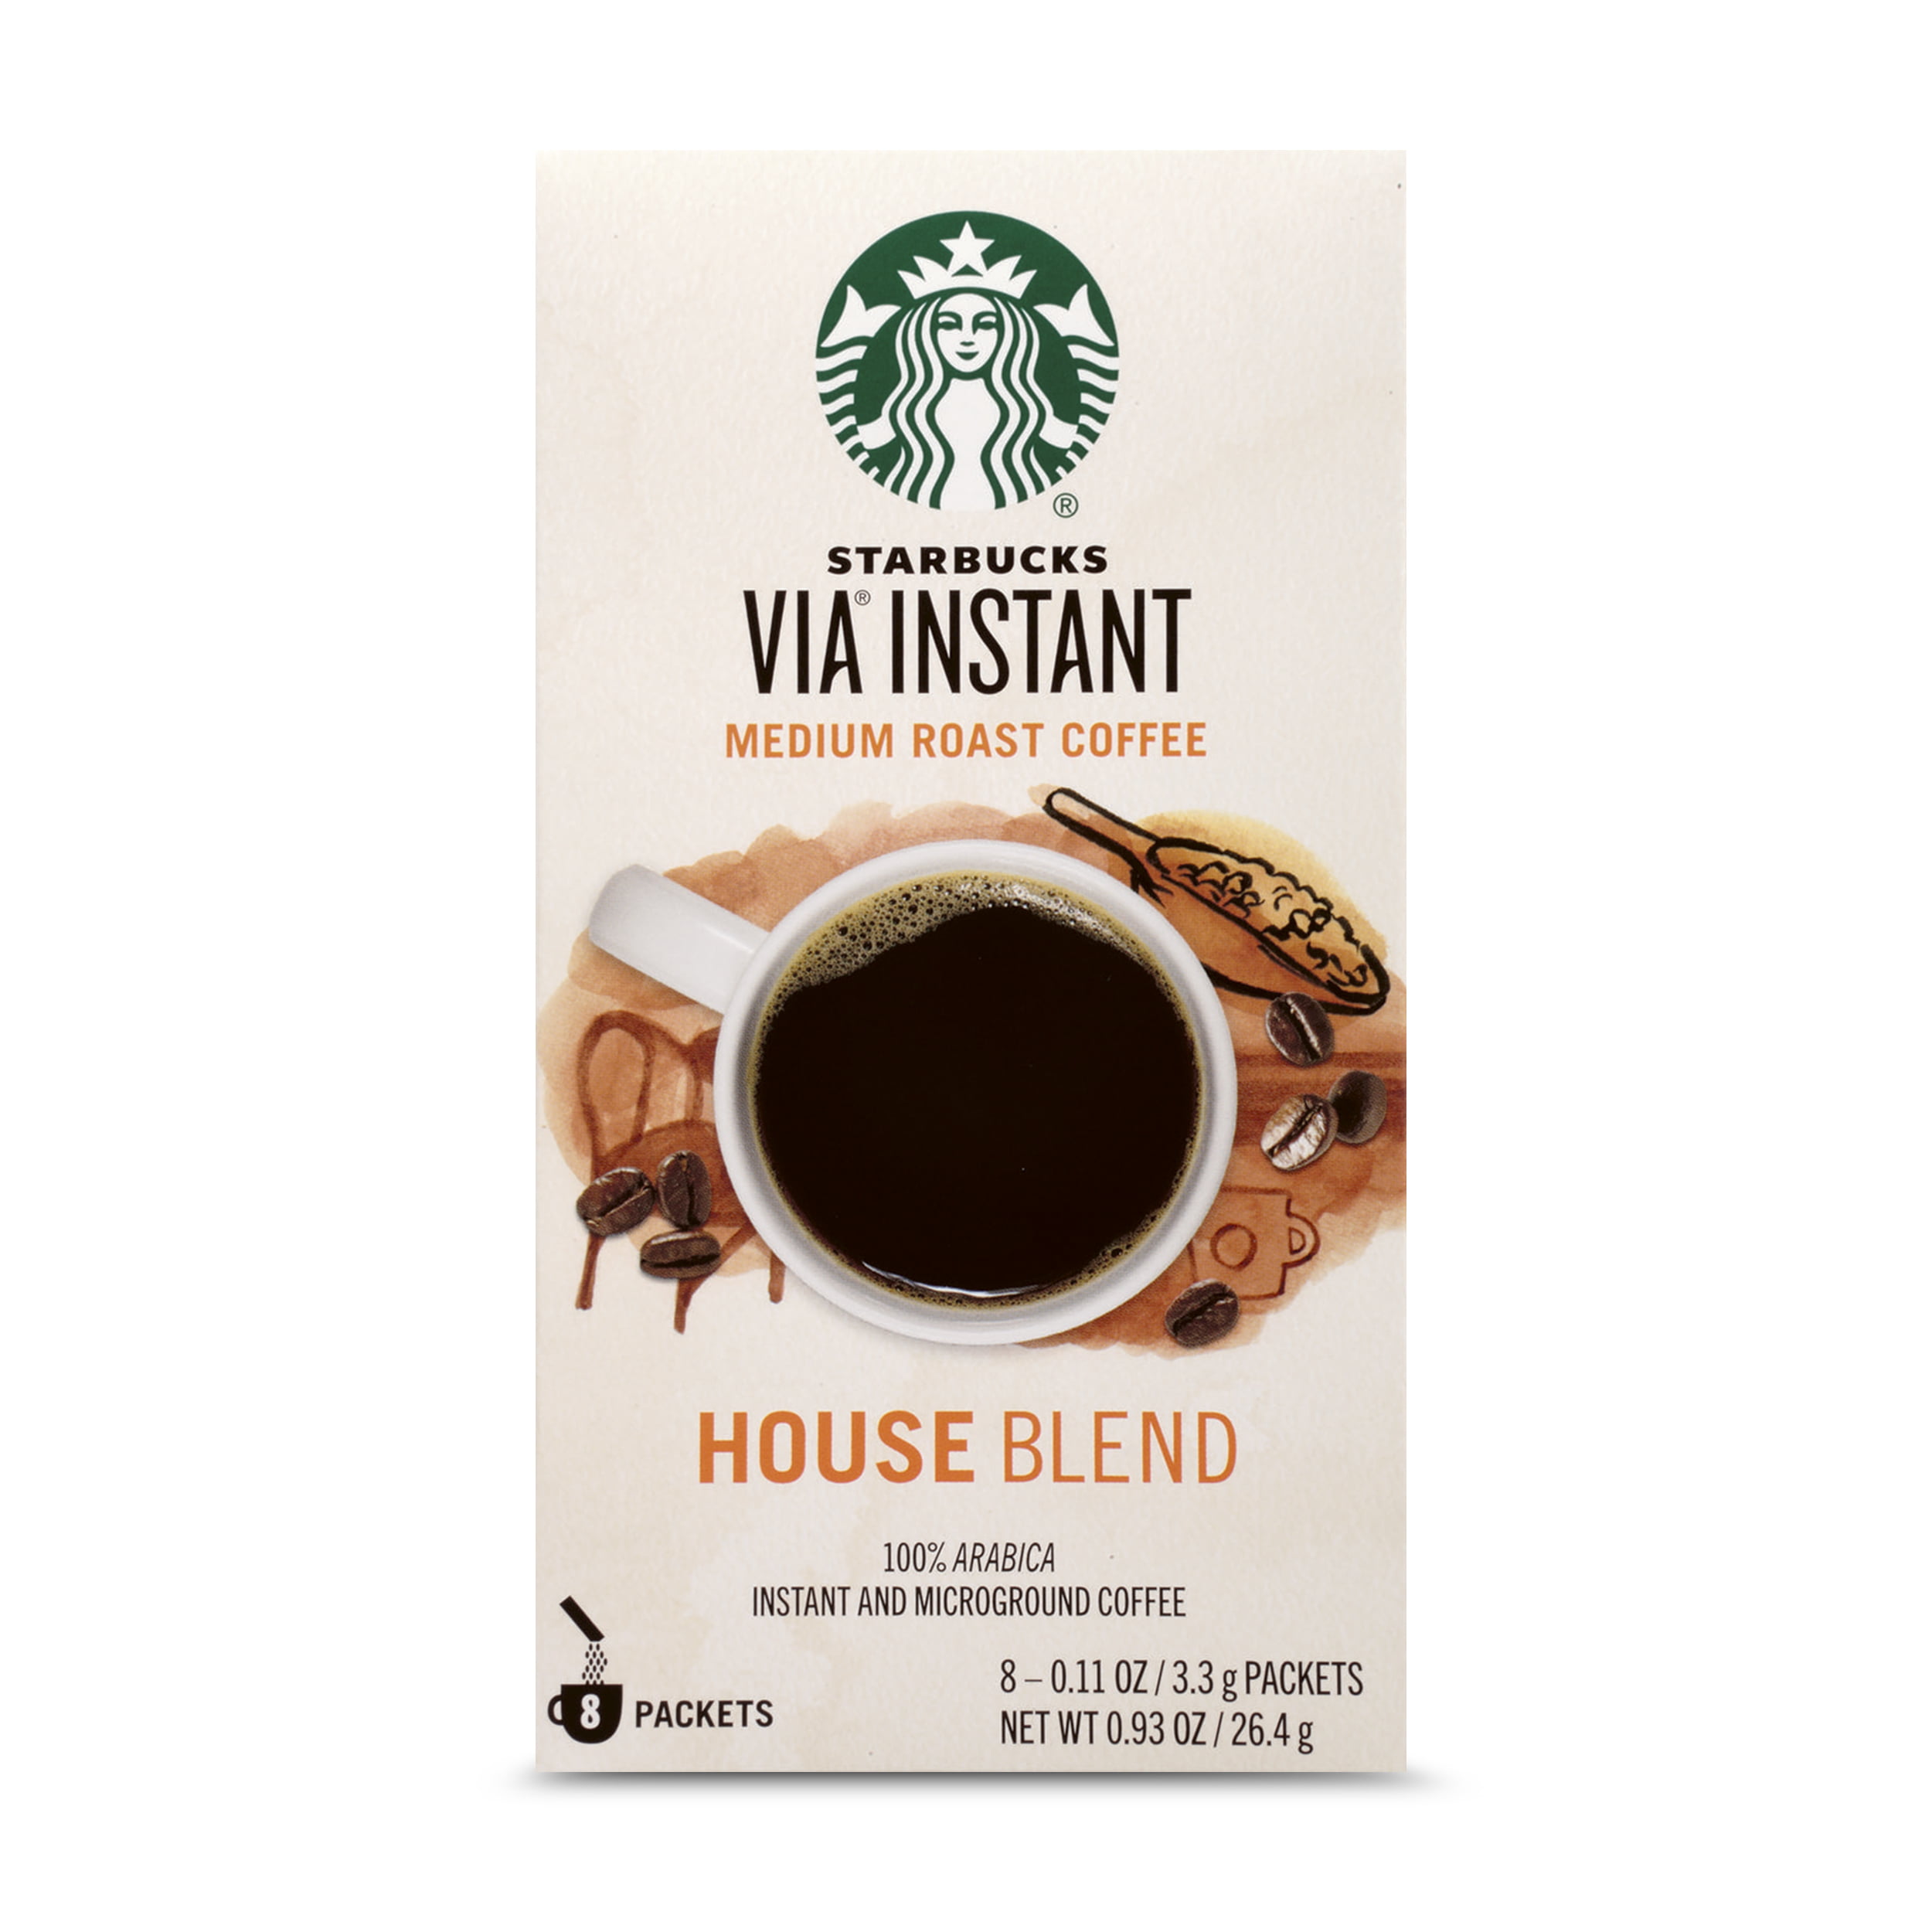 Starbucks VIA Instant House Blend Medium Roast Coffee (1